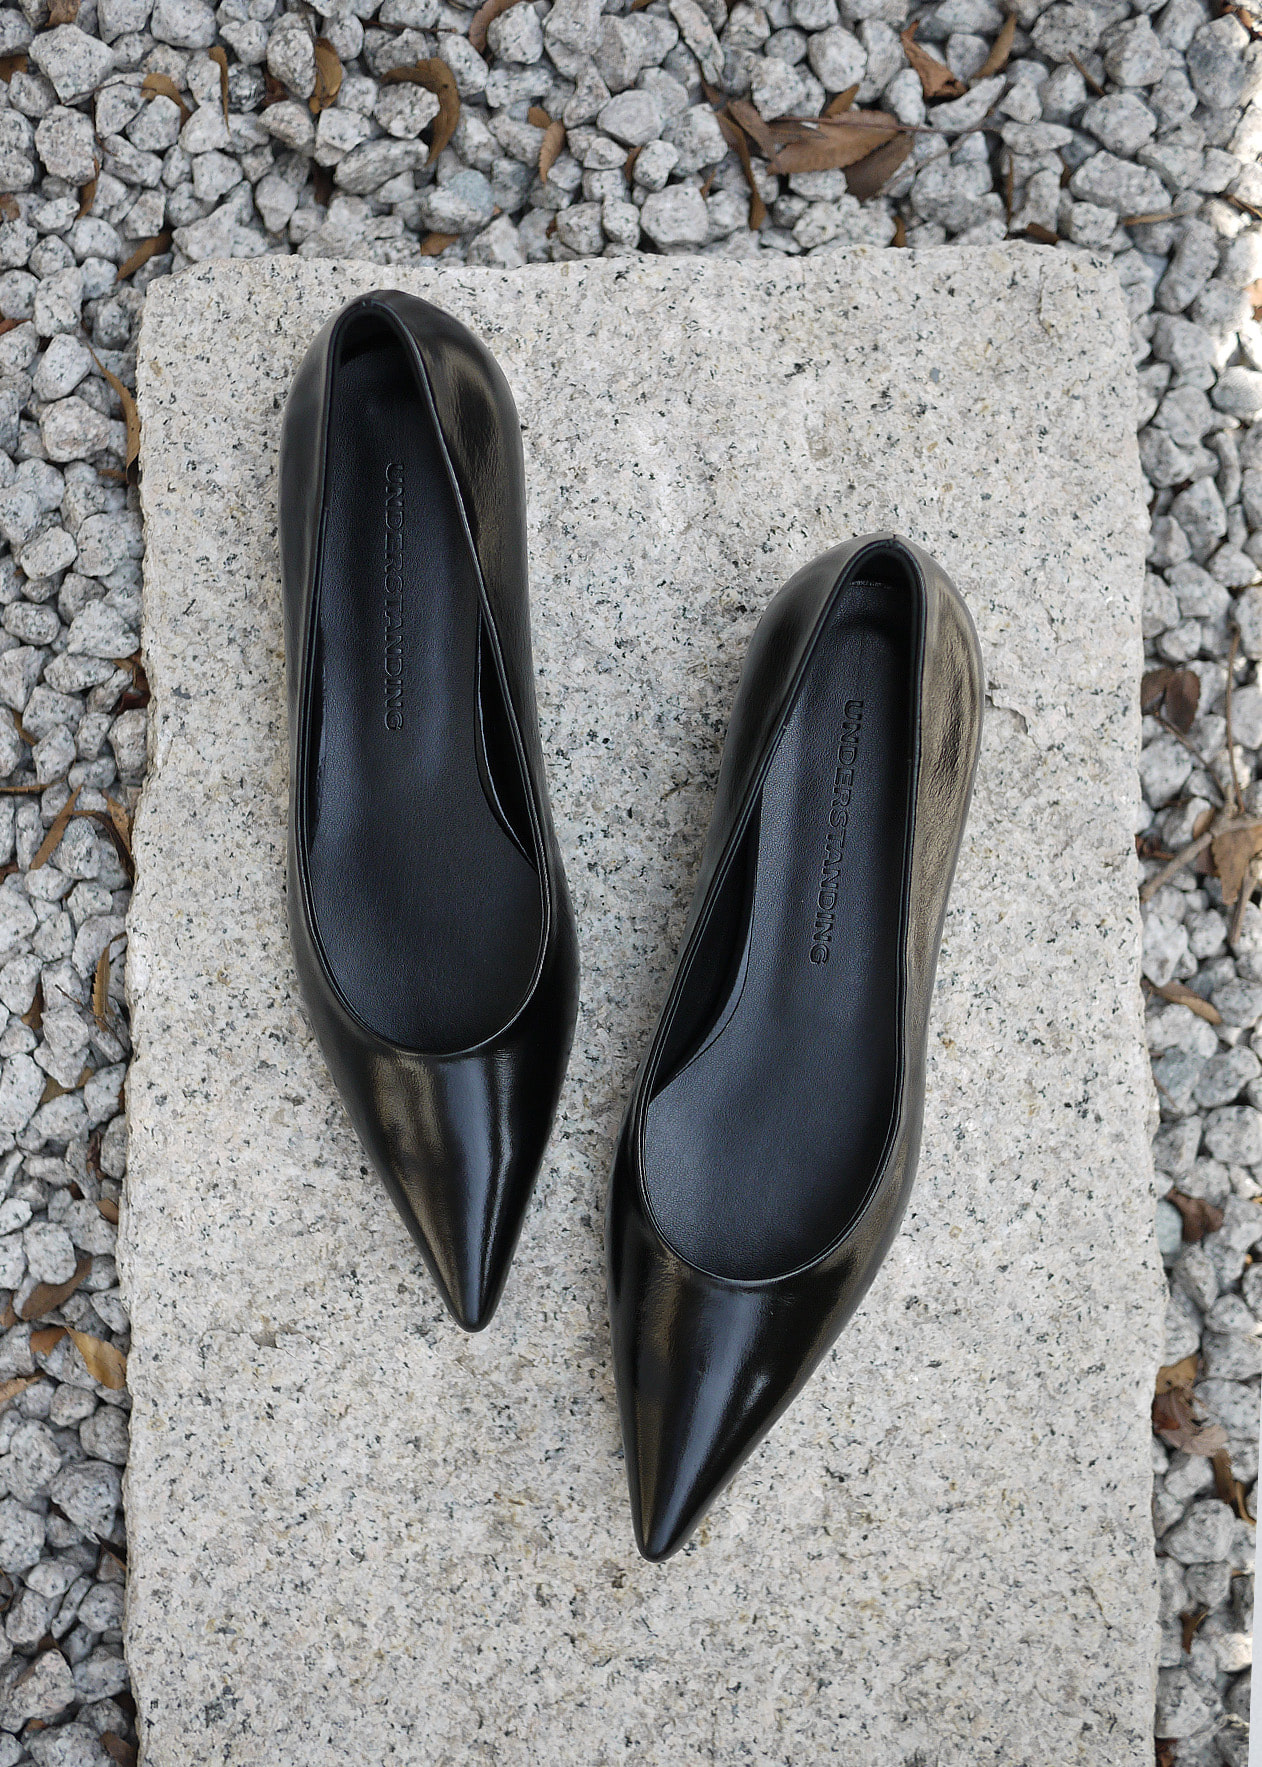 Under stiletto low heels (3cm)